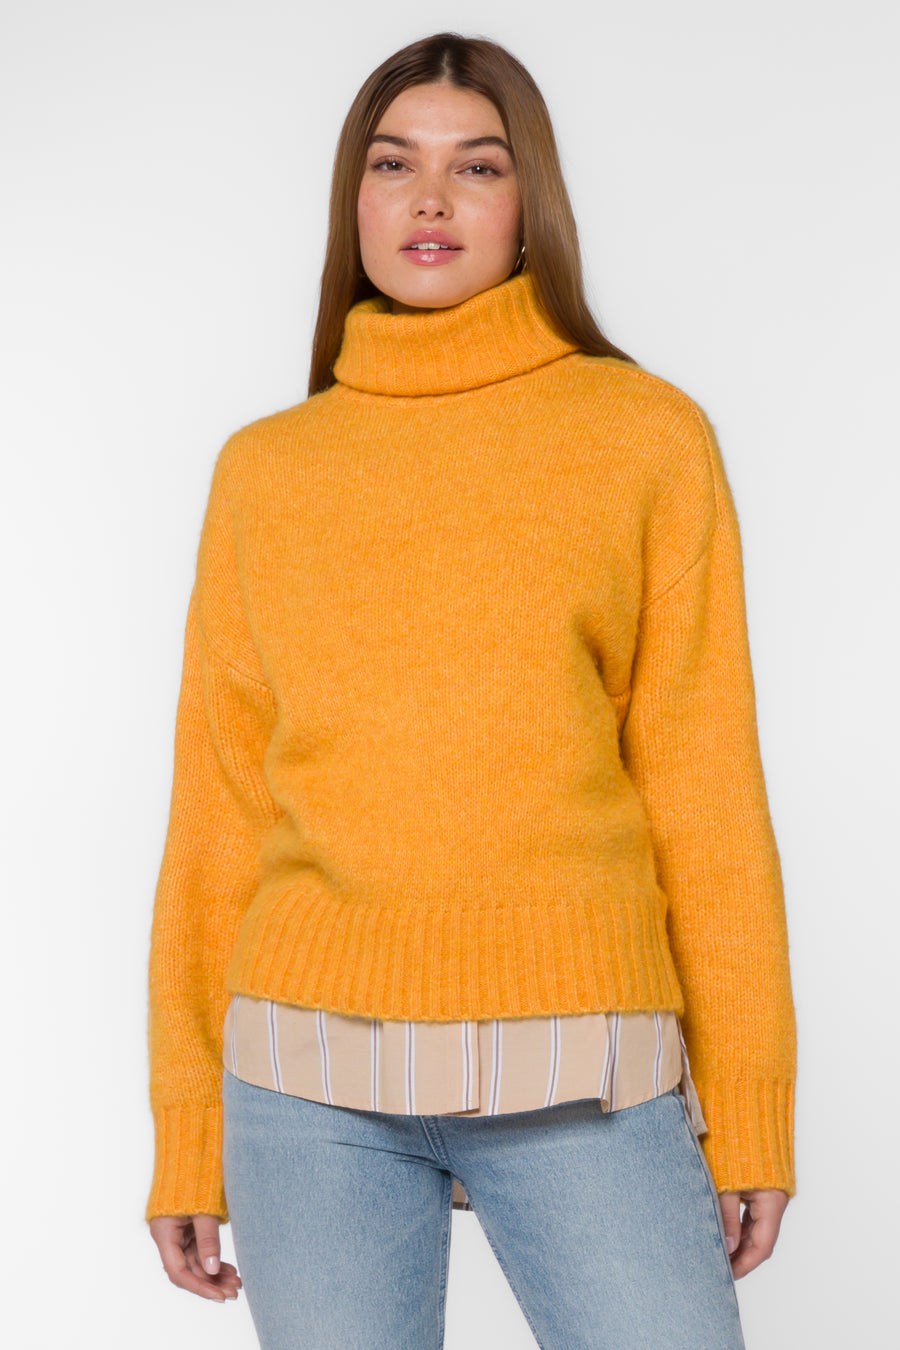 Tillie Turtleneck Sweater